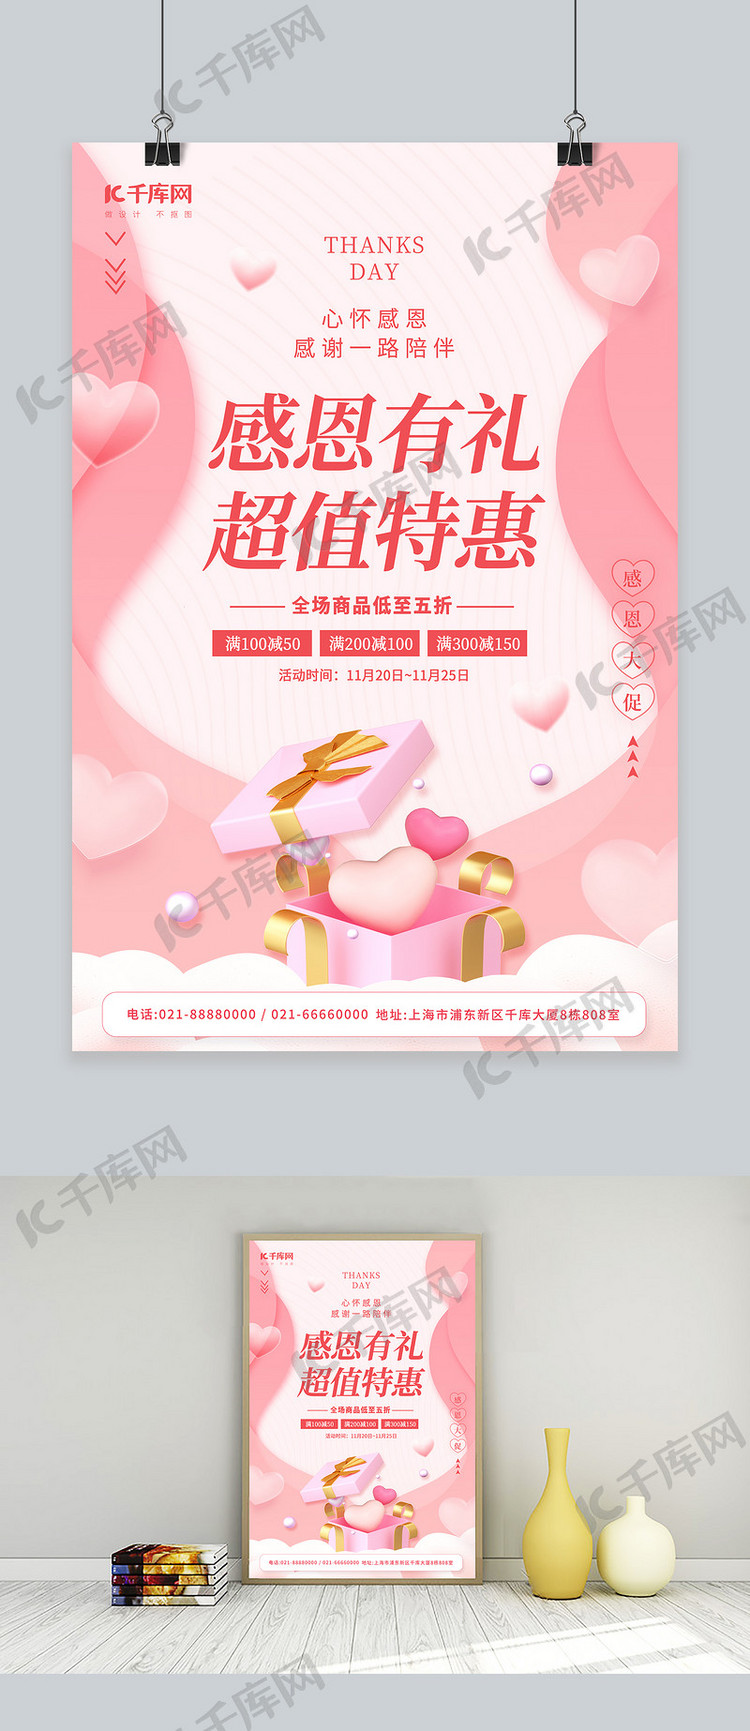 感恩节感恩有礼超值特惠3D爱心礼盒粉色简约促销海报